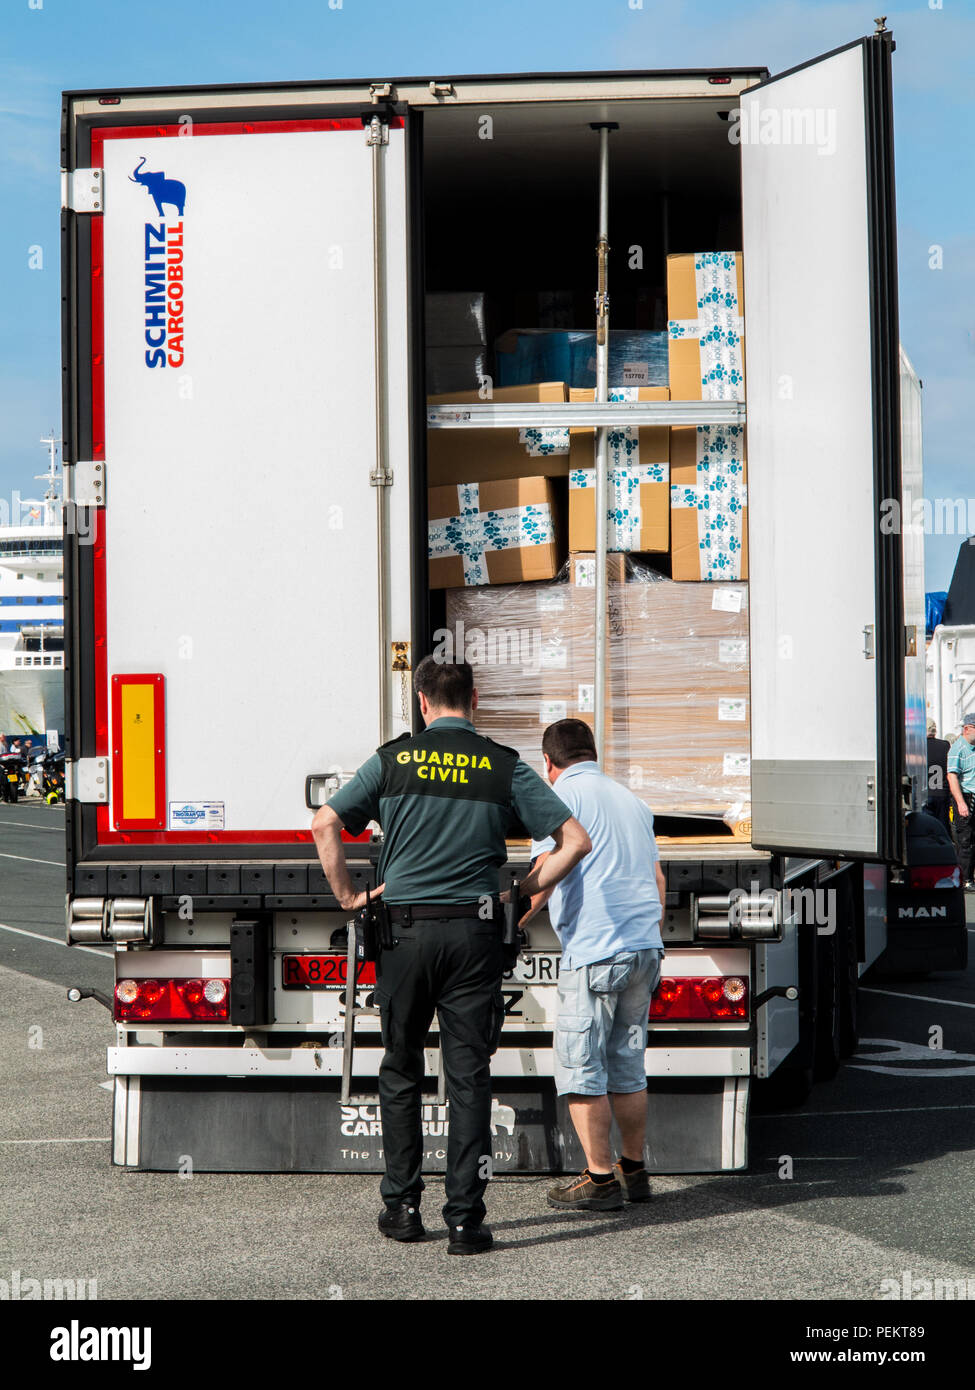 Spanisch Bundesgrenzschutz Polizei Guardia Civil prüfen suche einen Container waggon LKW Fahrzeug an der Fähre Hafen Hafen von Santander Spanien prüfen Stockfoto